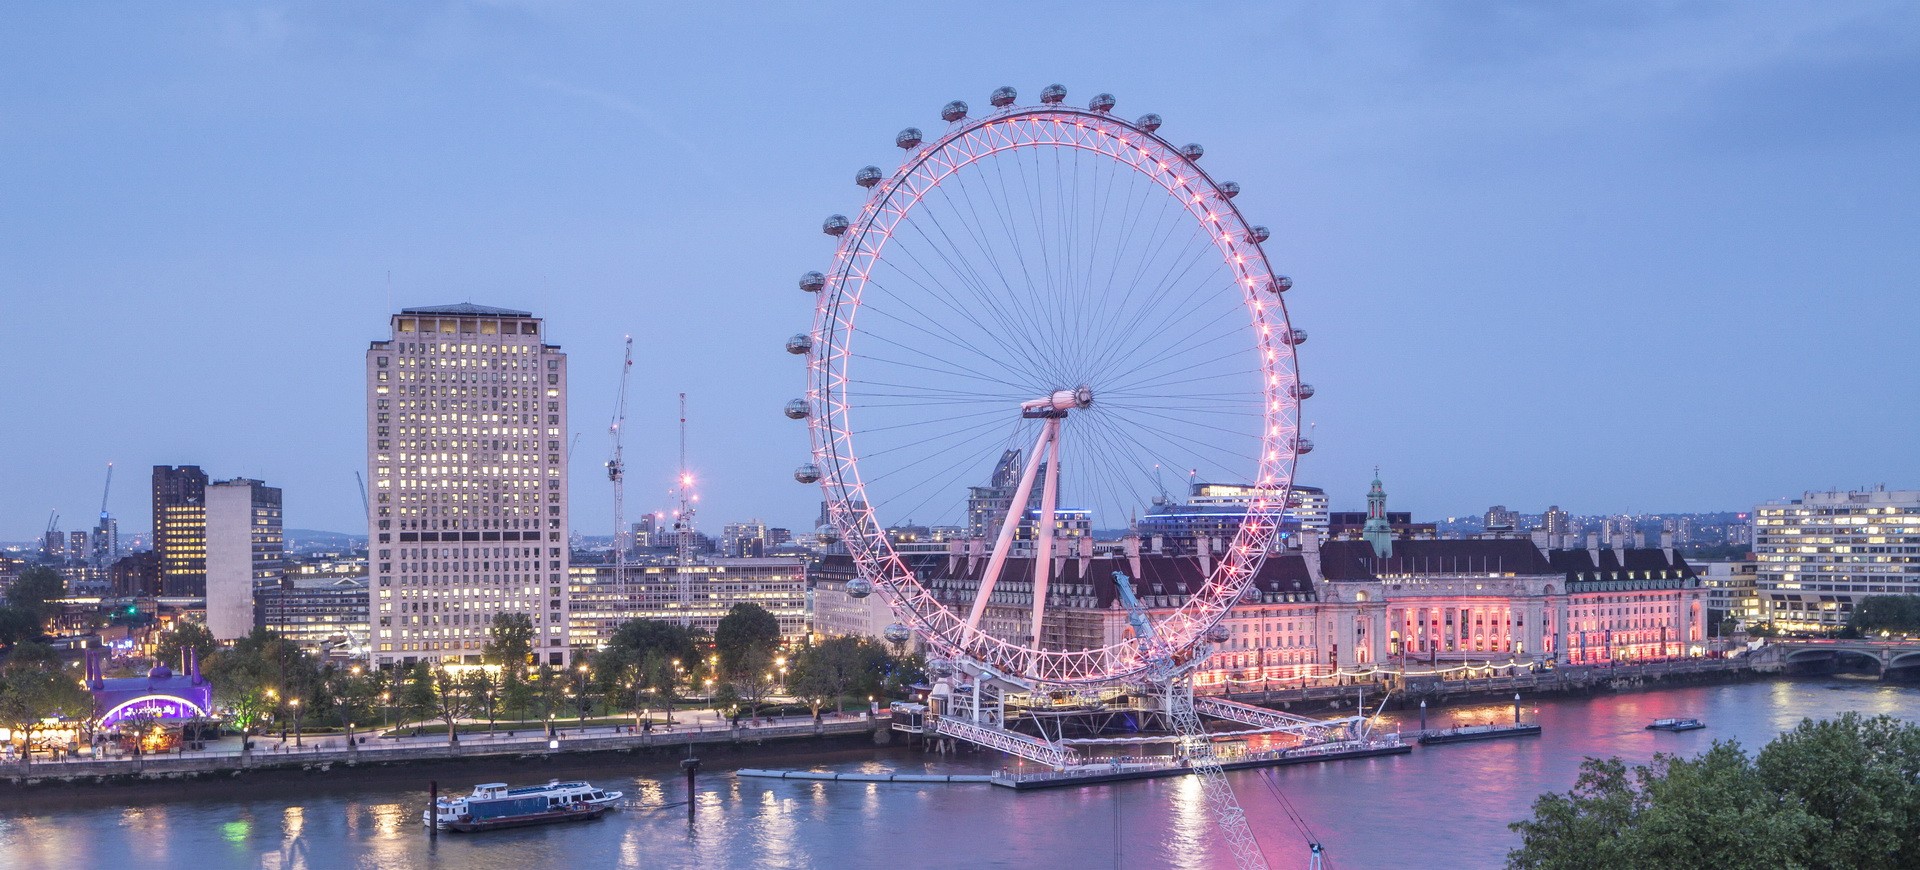 Royaume Uni Londres Tamise et London Eye le Millennium Wheel